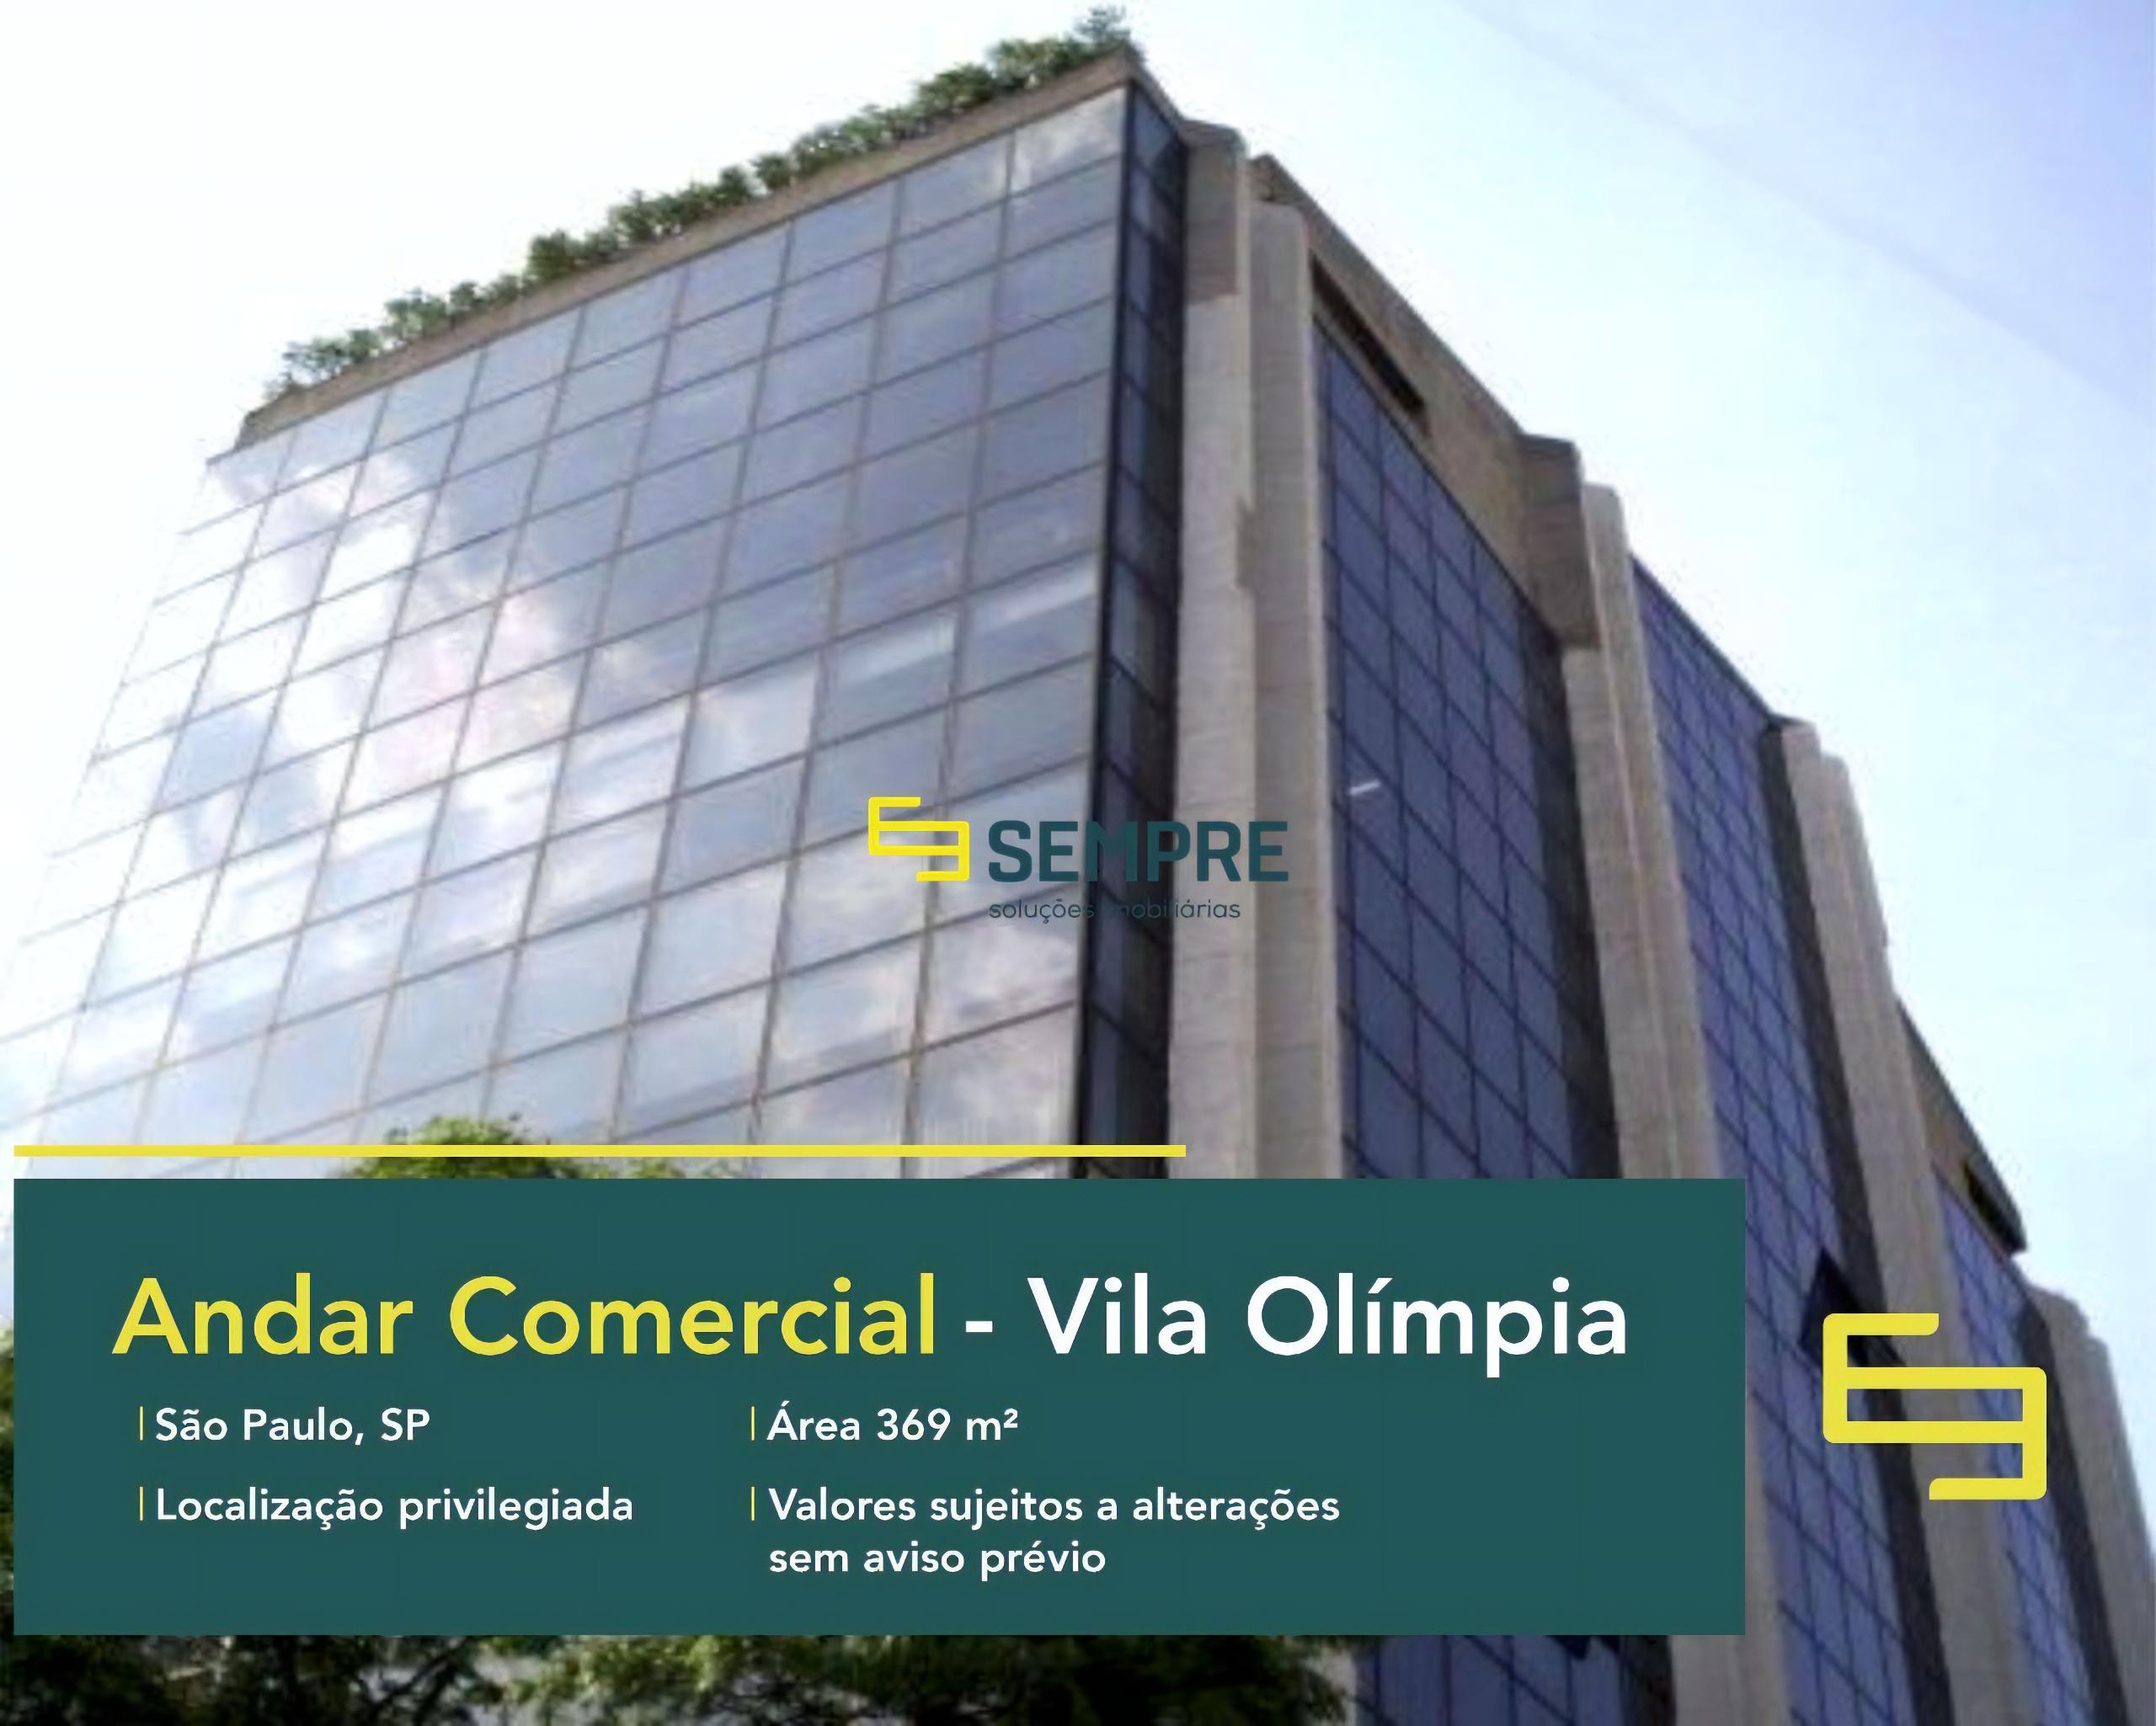 Andar comercial no Vila Olímpia para alugar em São Paulo, excelente localização. O estabelecimento comercial conta com área de 369,12 m².